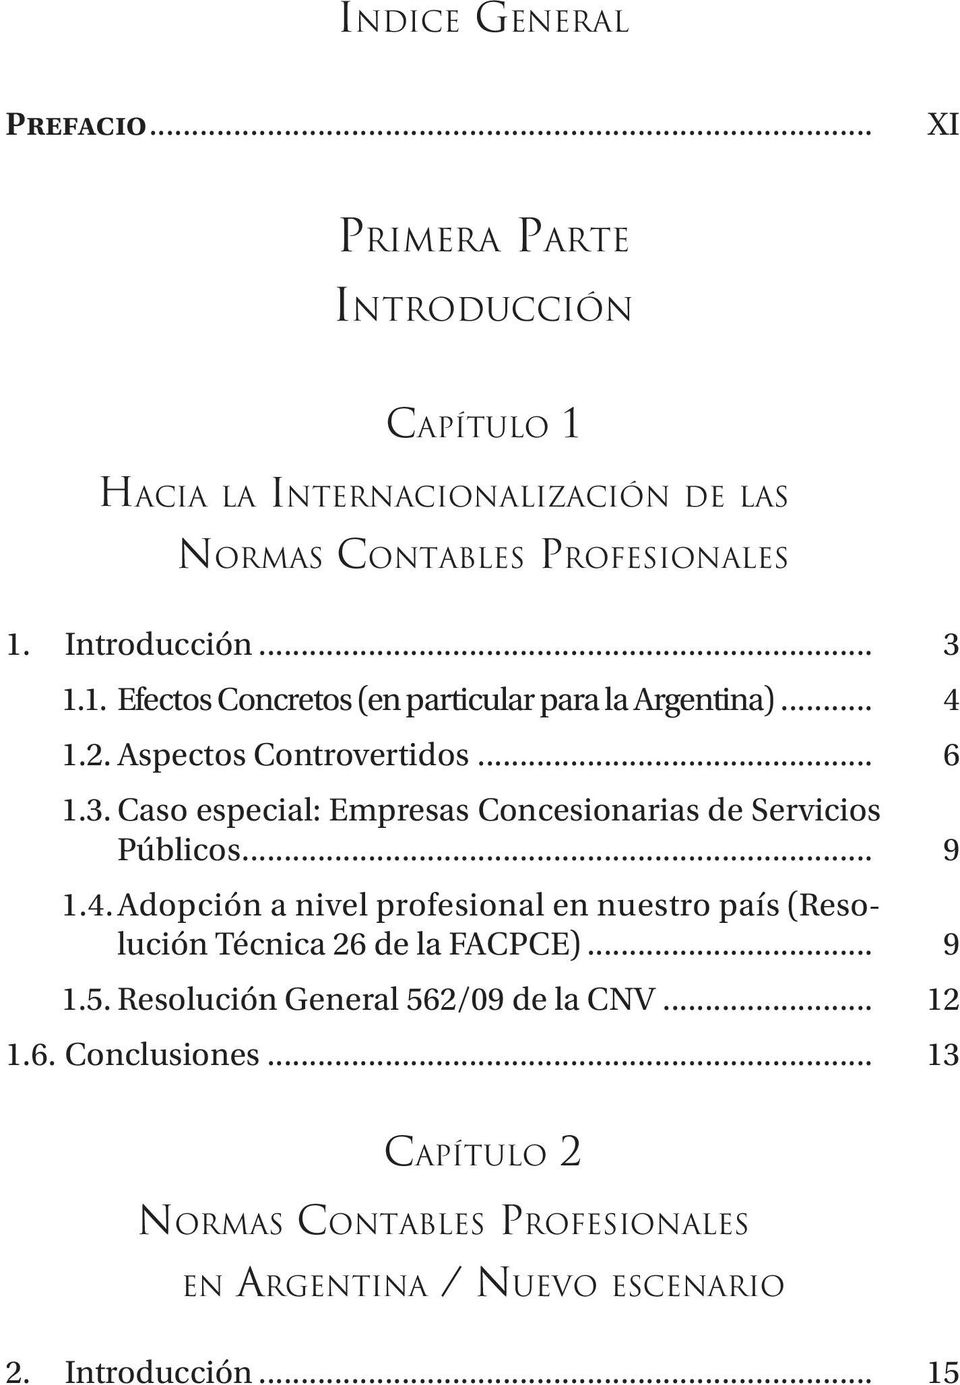 Introducción... 3 1.1. Efectos Concretos (en particular para la Argentina)... 4 1.2. Aspectos Controvertidos... 6 1.3. Caso especial: Empresas Concesionarias de Servicios Públicos.